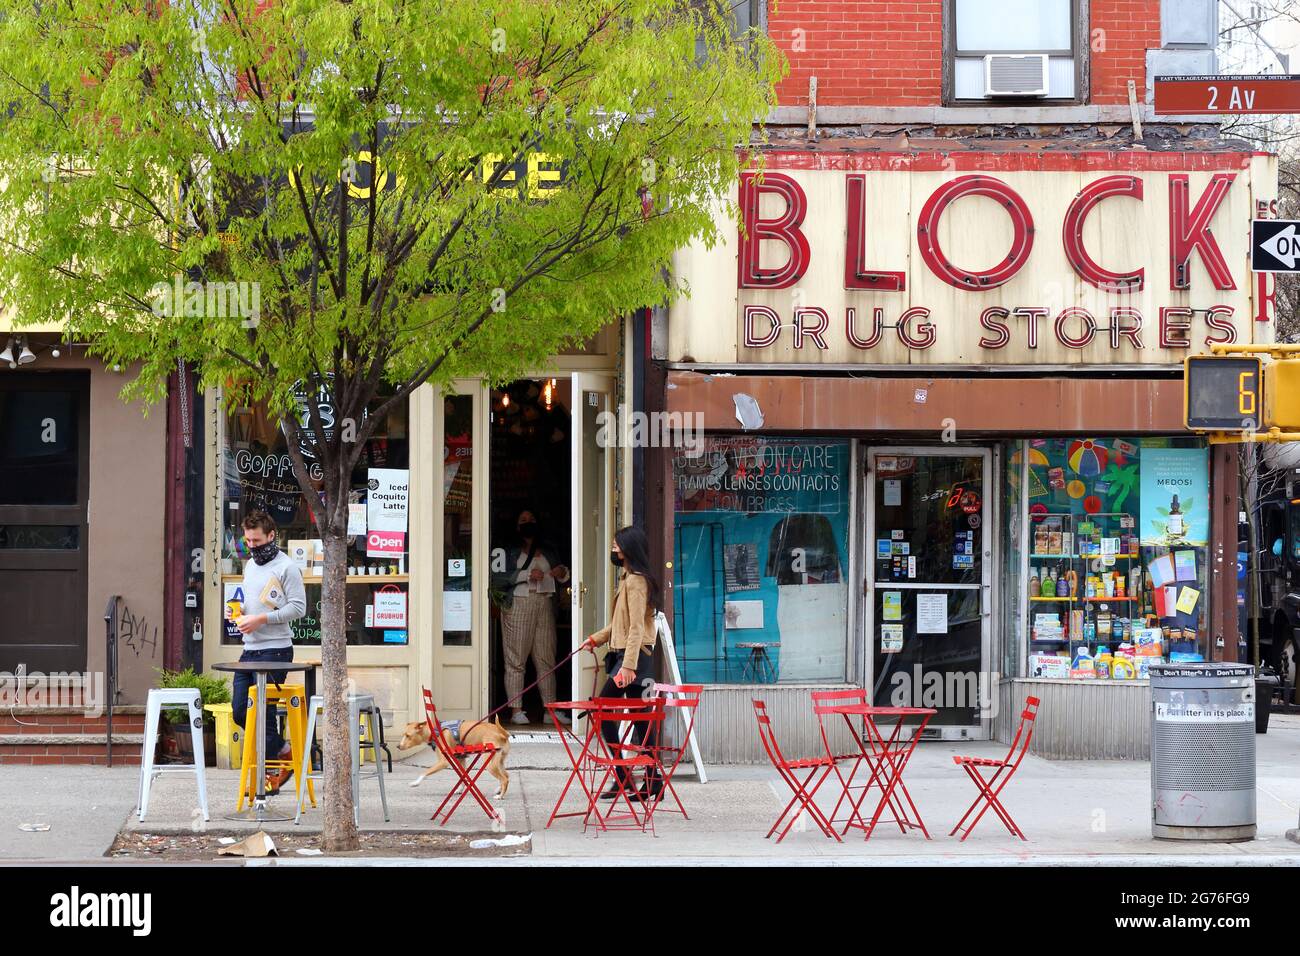 787 Coffee, Block Drug Store, 101 2. Ave, New York, NYC Foto von einem Coffee-to-Cup-Café und einem Drogeriegeschäft im East Village. Stockfoto